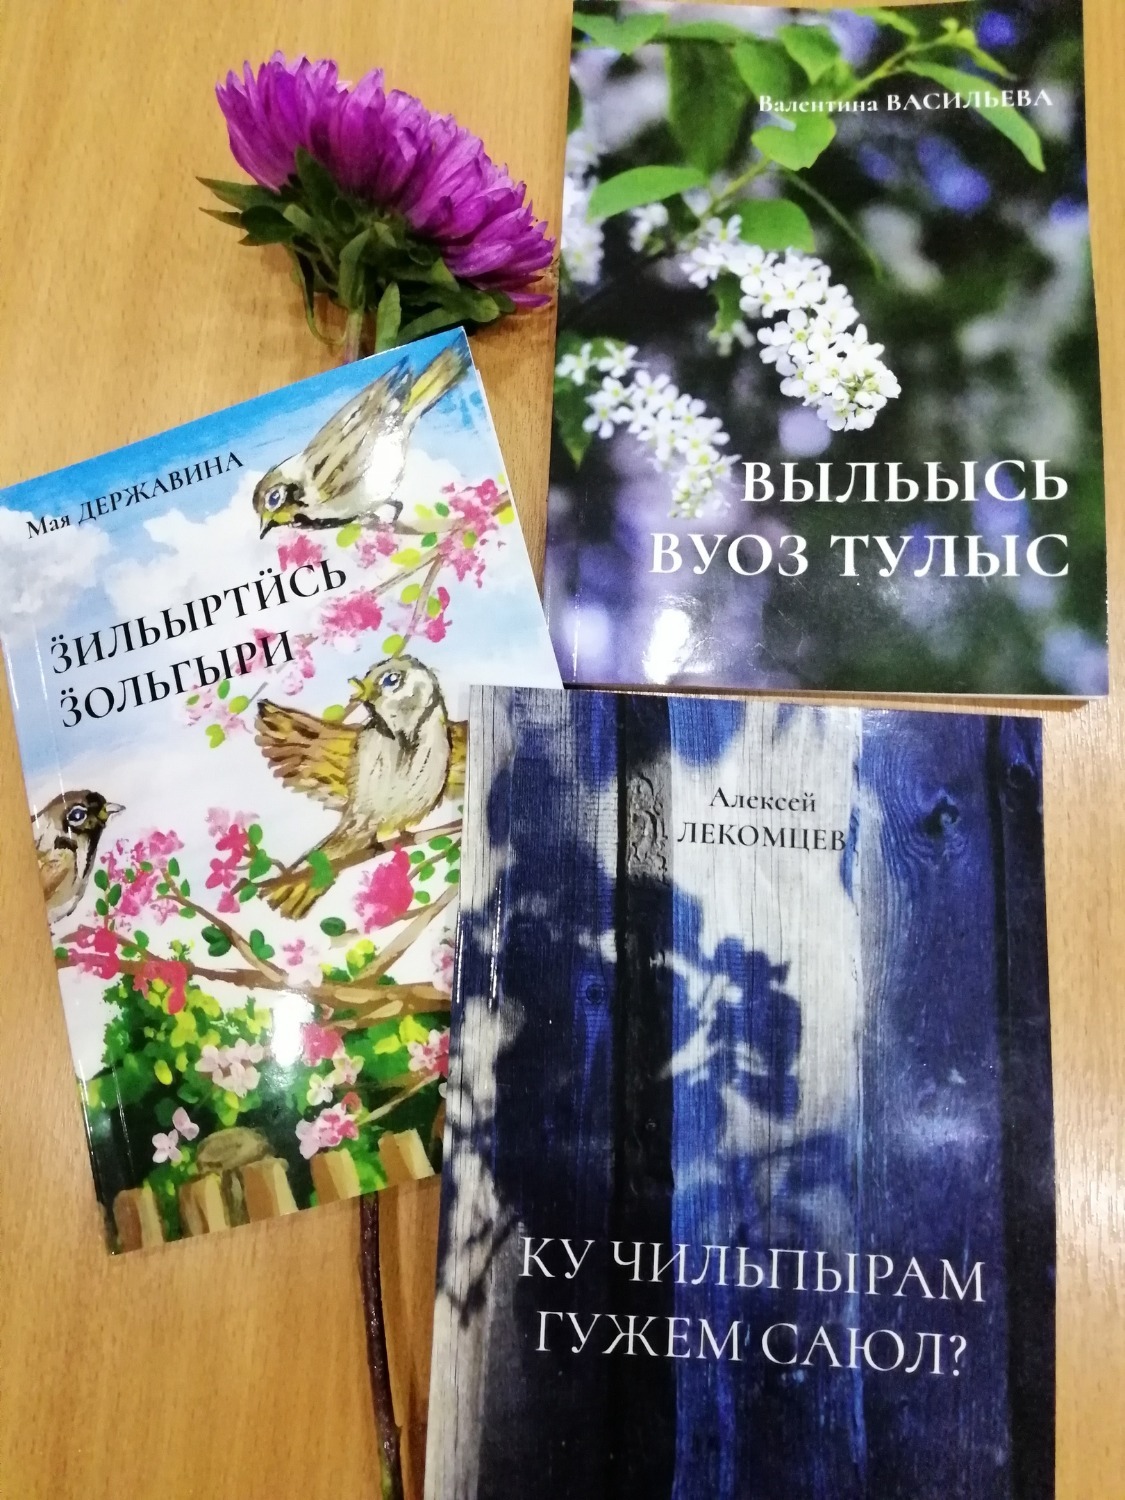 Три новые книги на удмуртском языке выпустили в Удмуртии